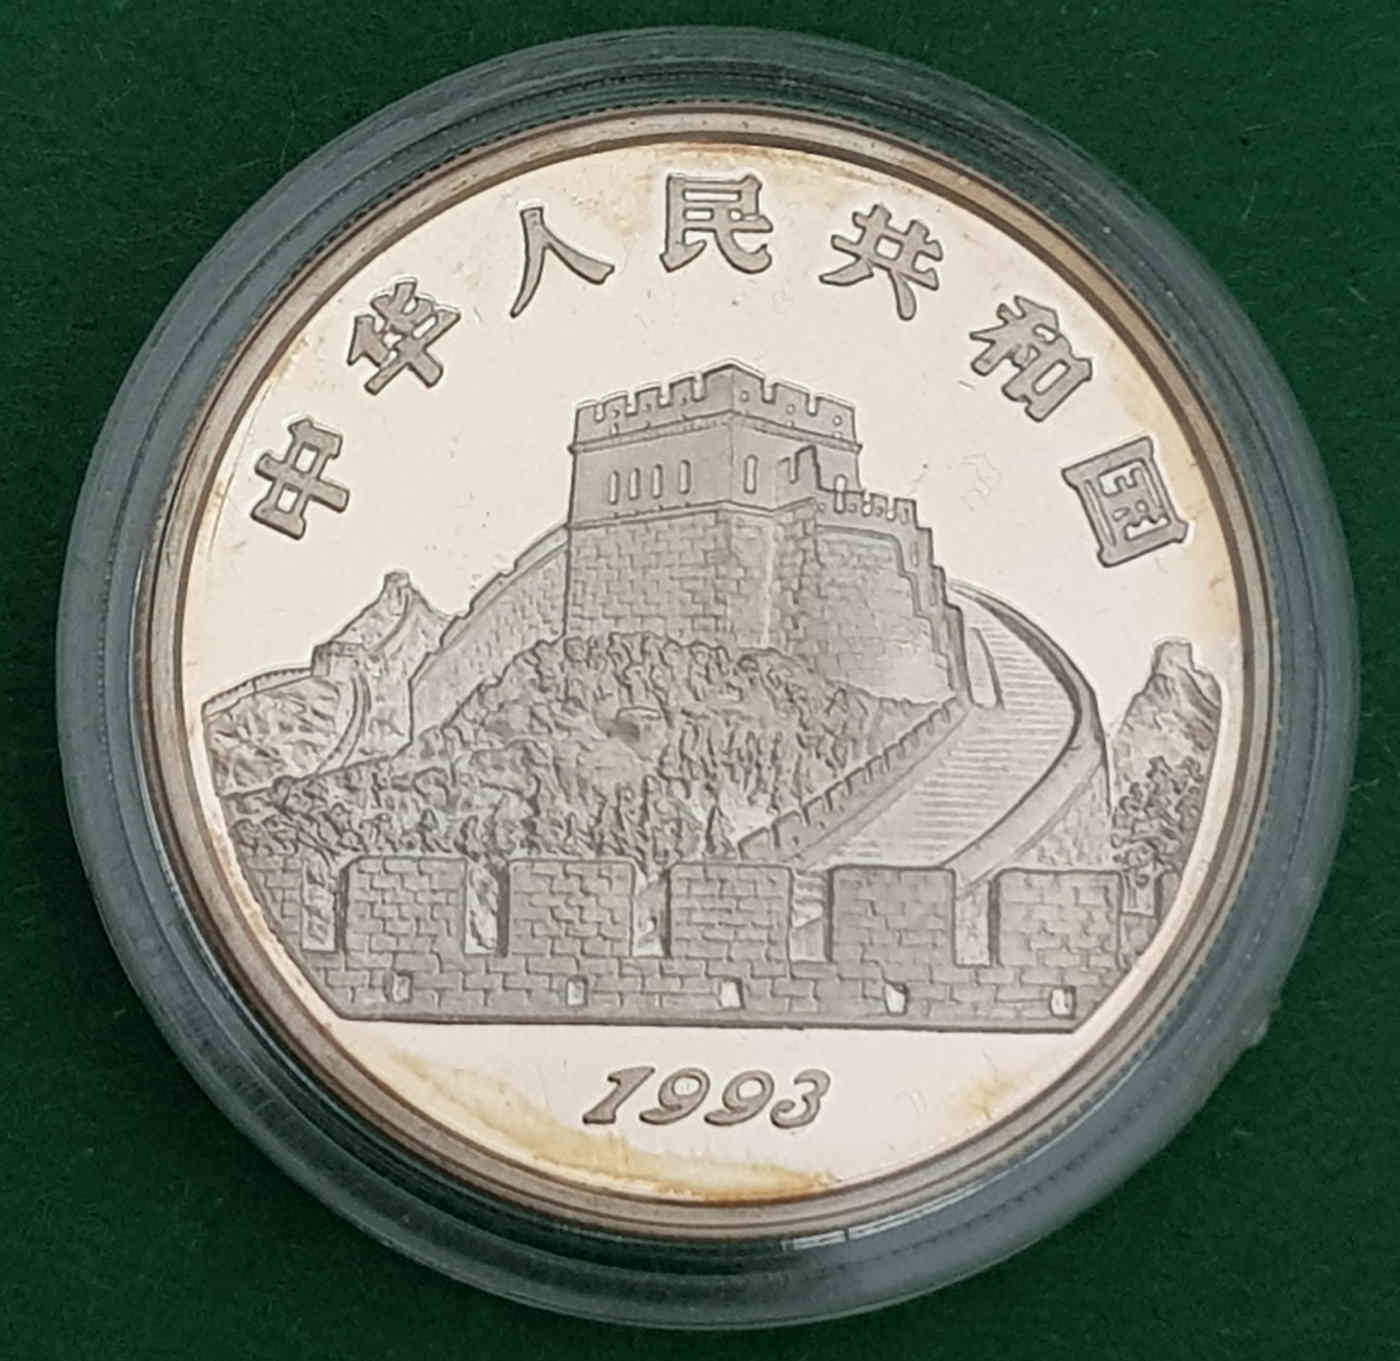 Chinesische Münze 1993 (Rückseite)